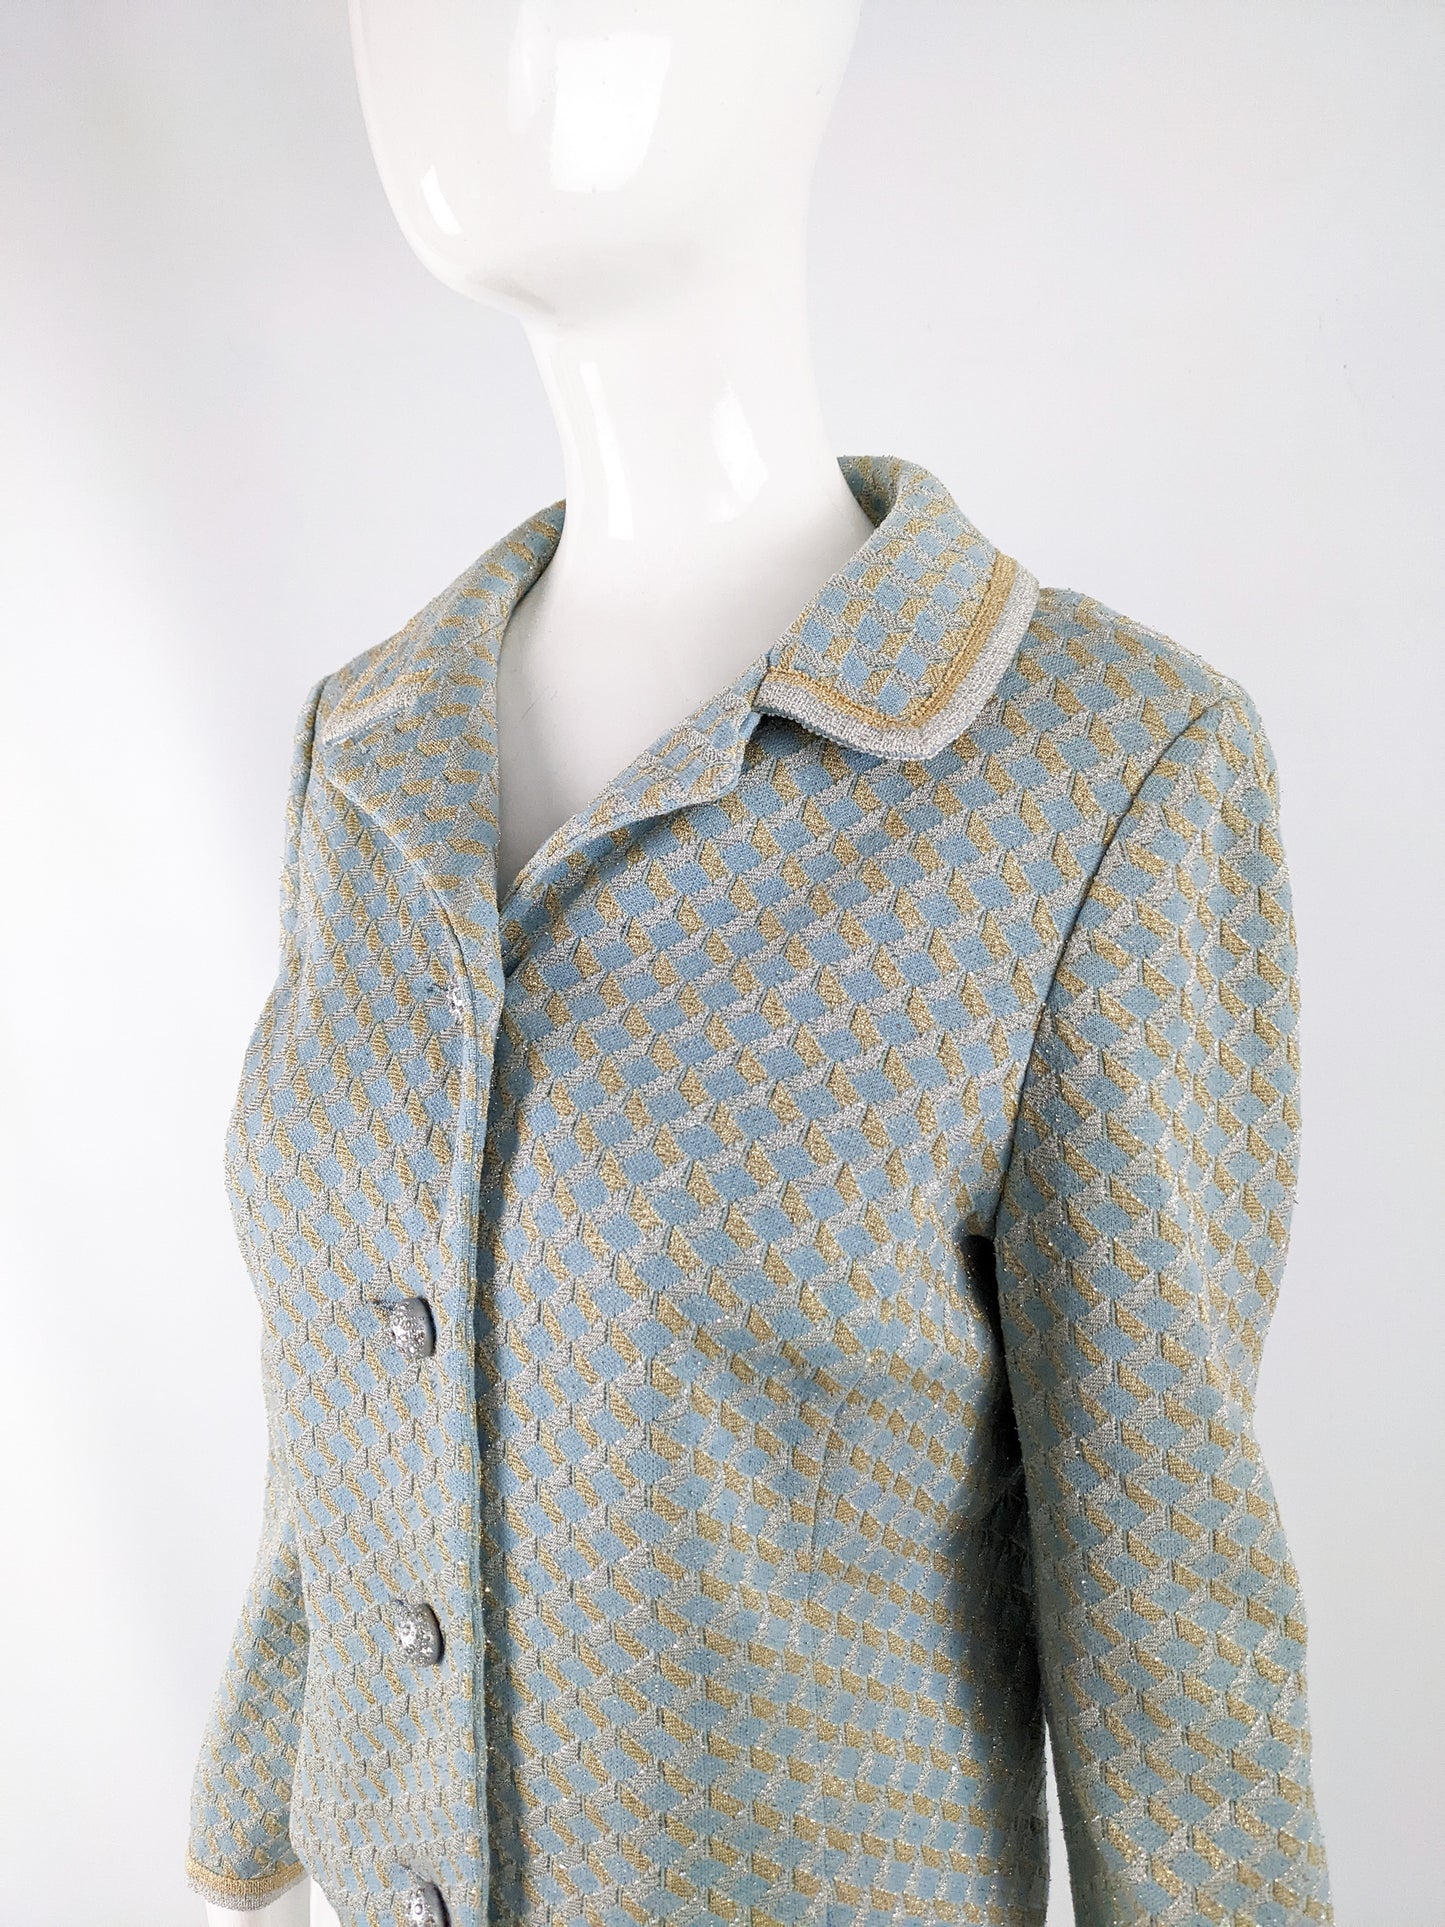 Tricosa Paris Vintage Duck Egg Blue & Gold Lurex Knit Jacket, 1960s